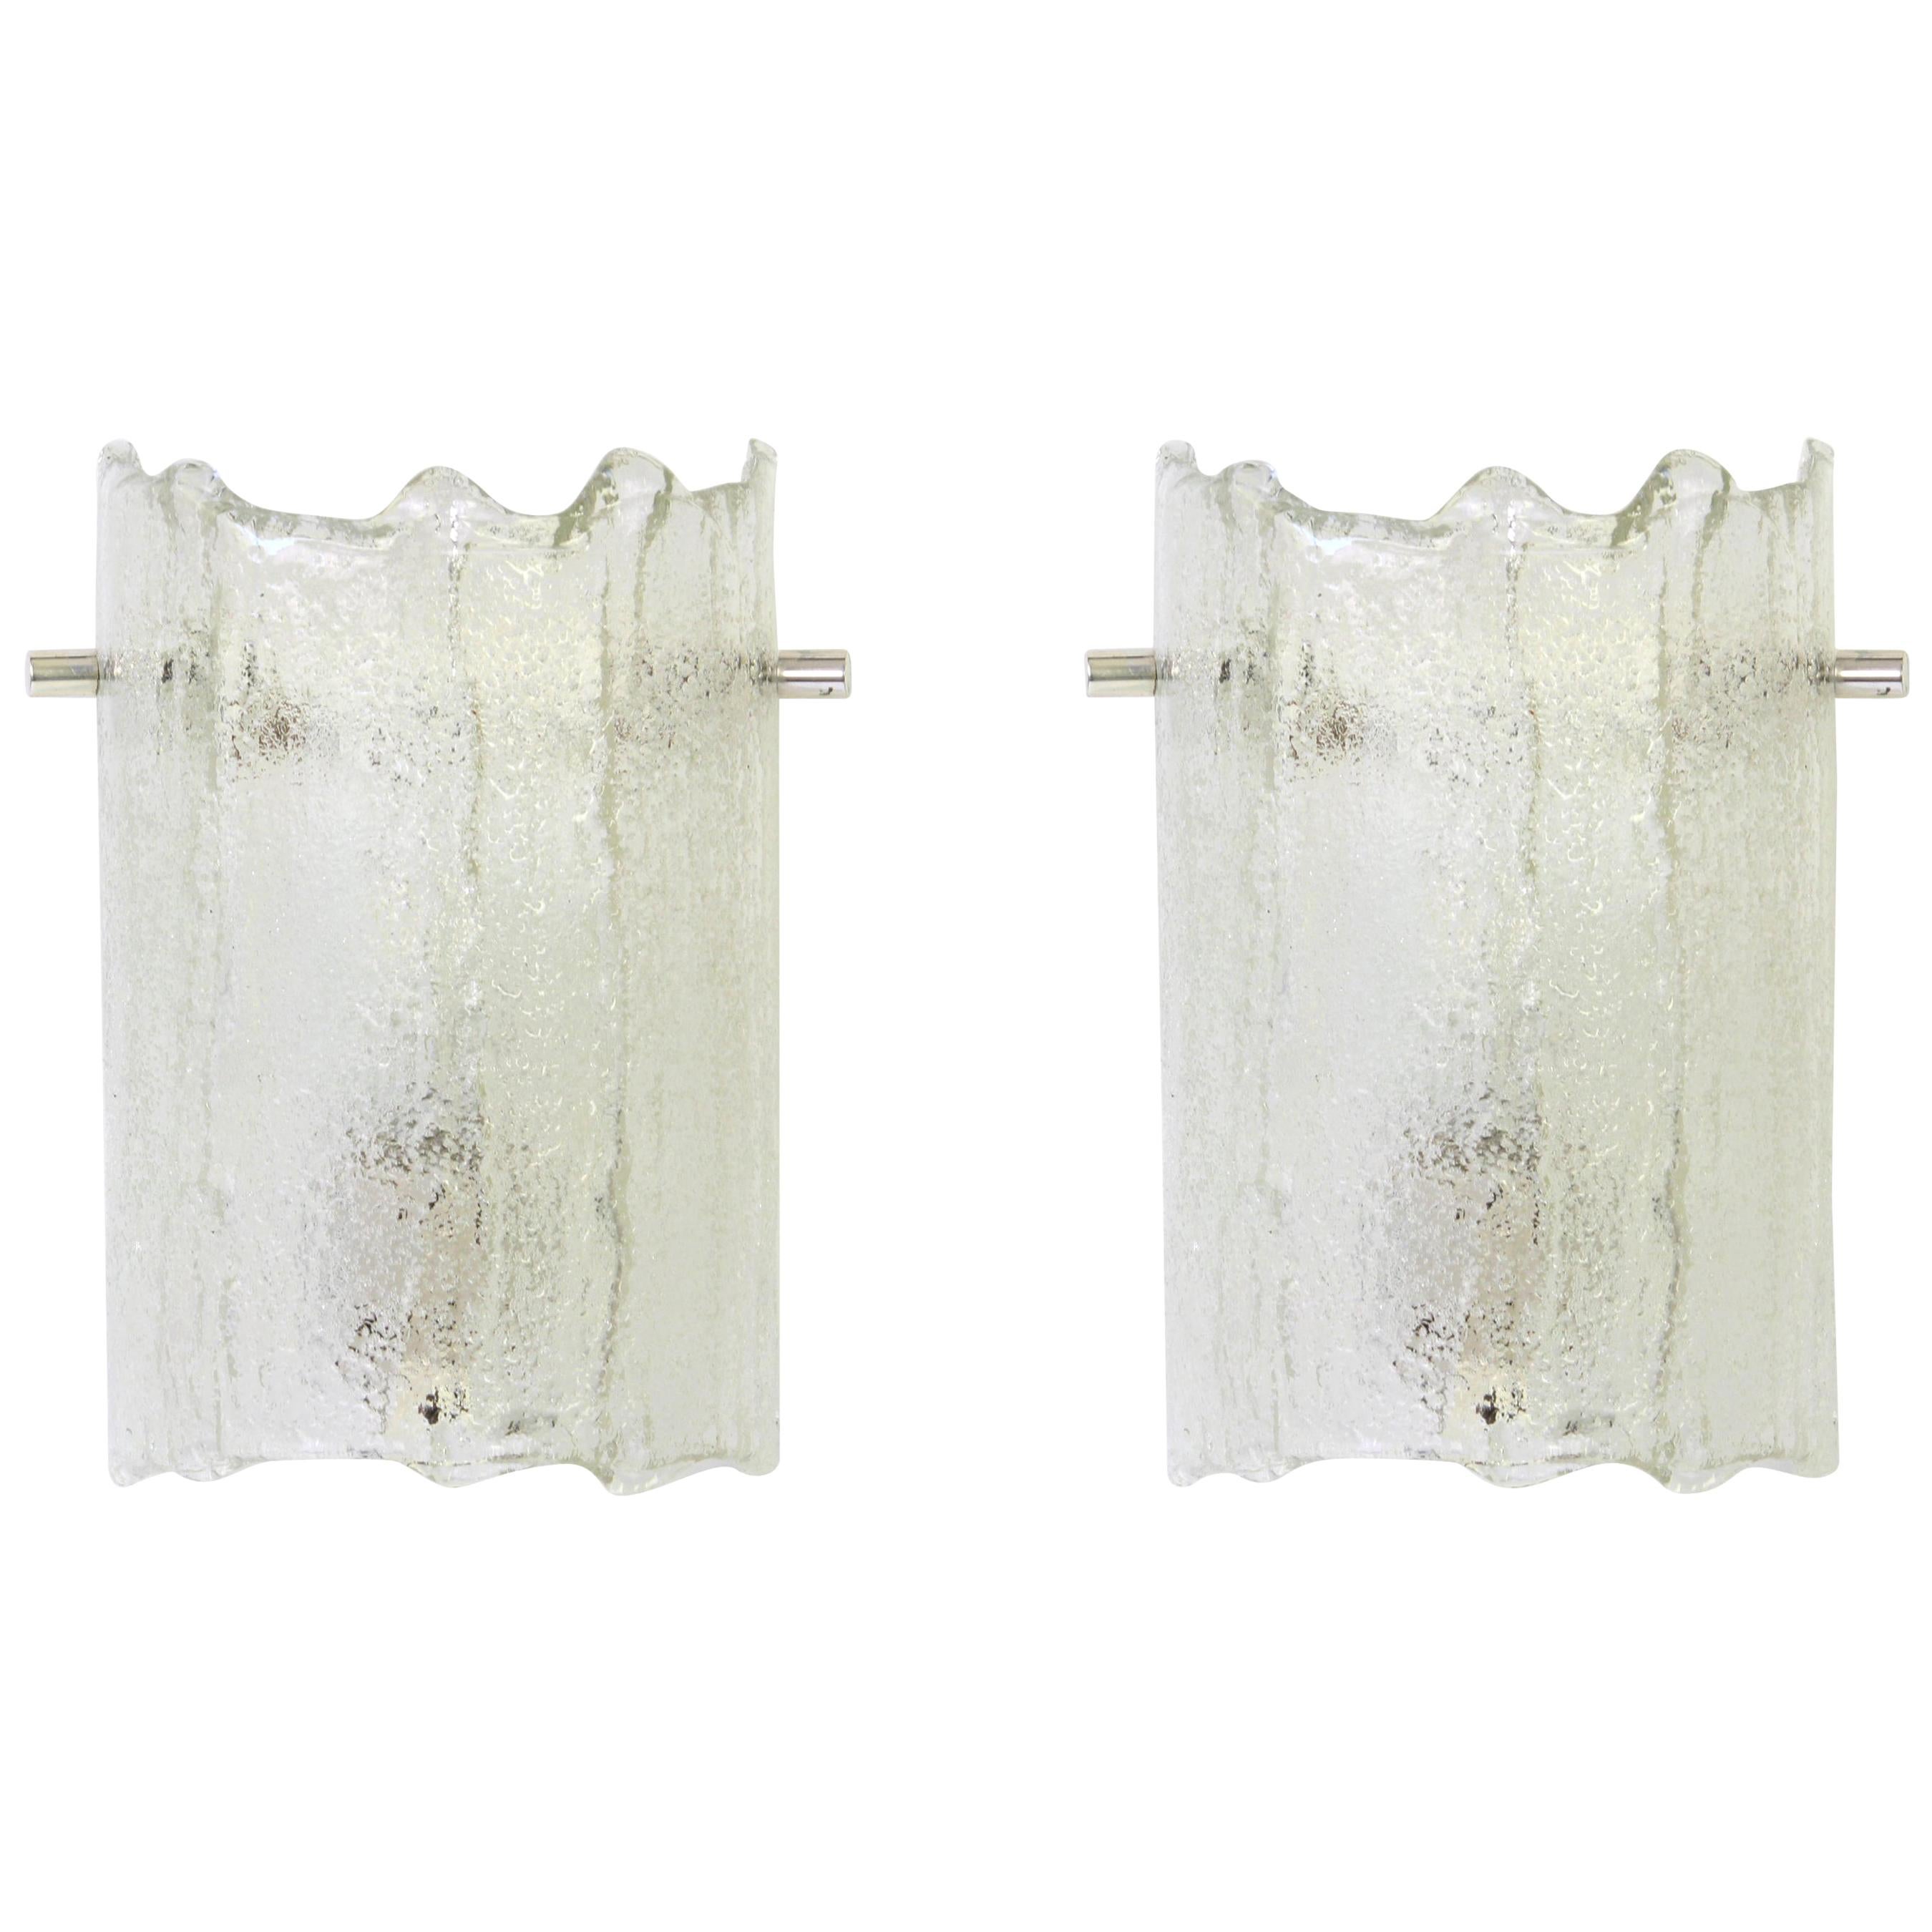 Wunderschönes Paar Murano-Glas-Leuchter von Kaiser Leuchten, Deutschland, ca. 1970er Jahre.

Schwere Qualität und in sehr gutem Zustand. Gereinigt, gut verkabelt und einsatzbereit. 

Jede Leuchte benötigt eine kleine E14-Glühbirne mit max. 40 W und